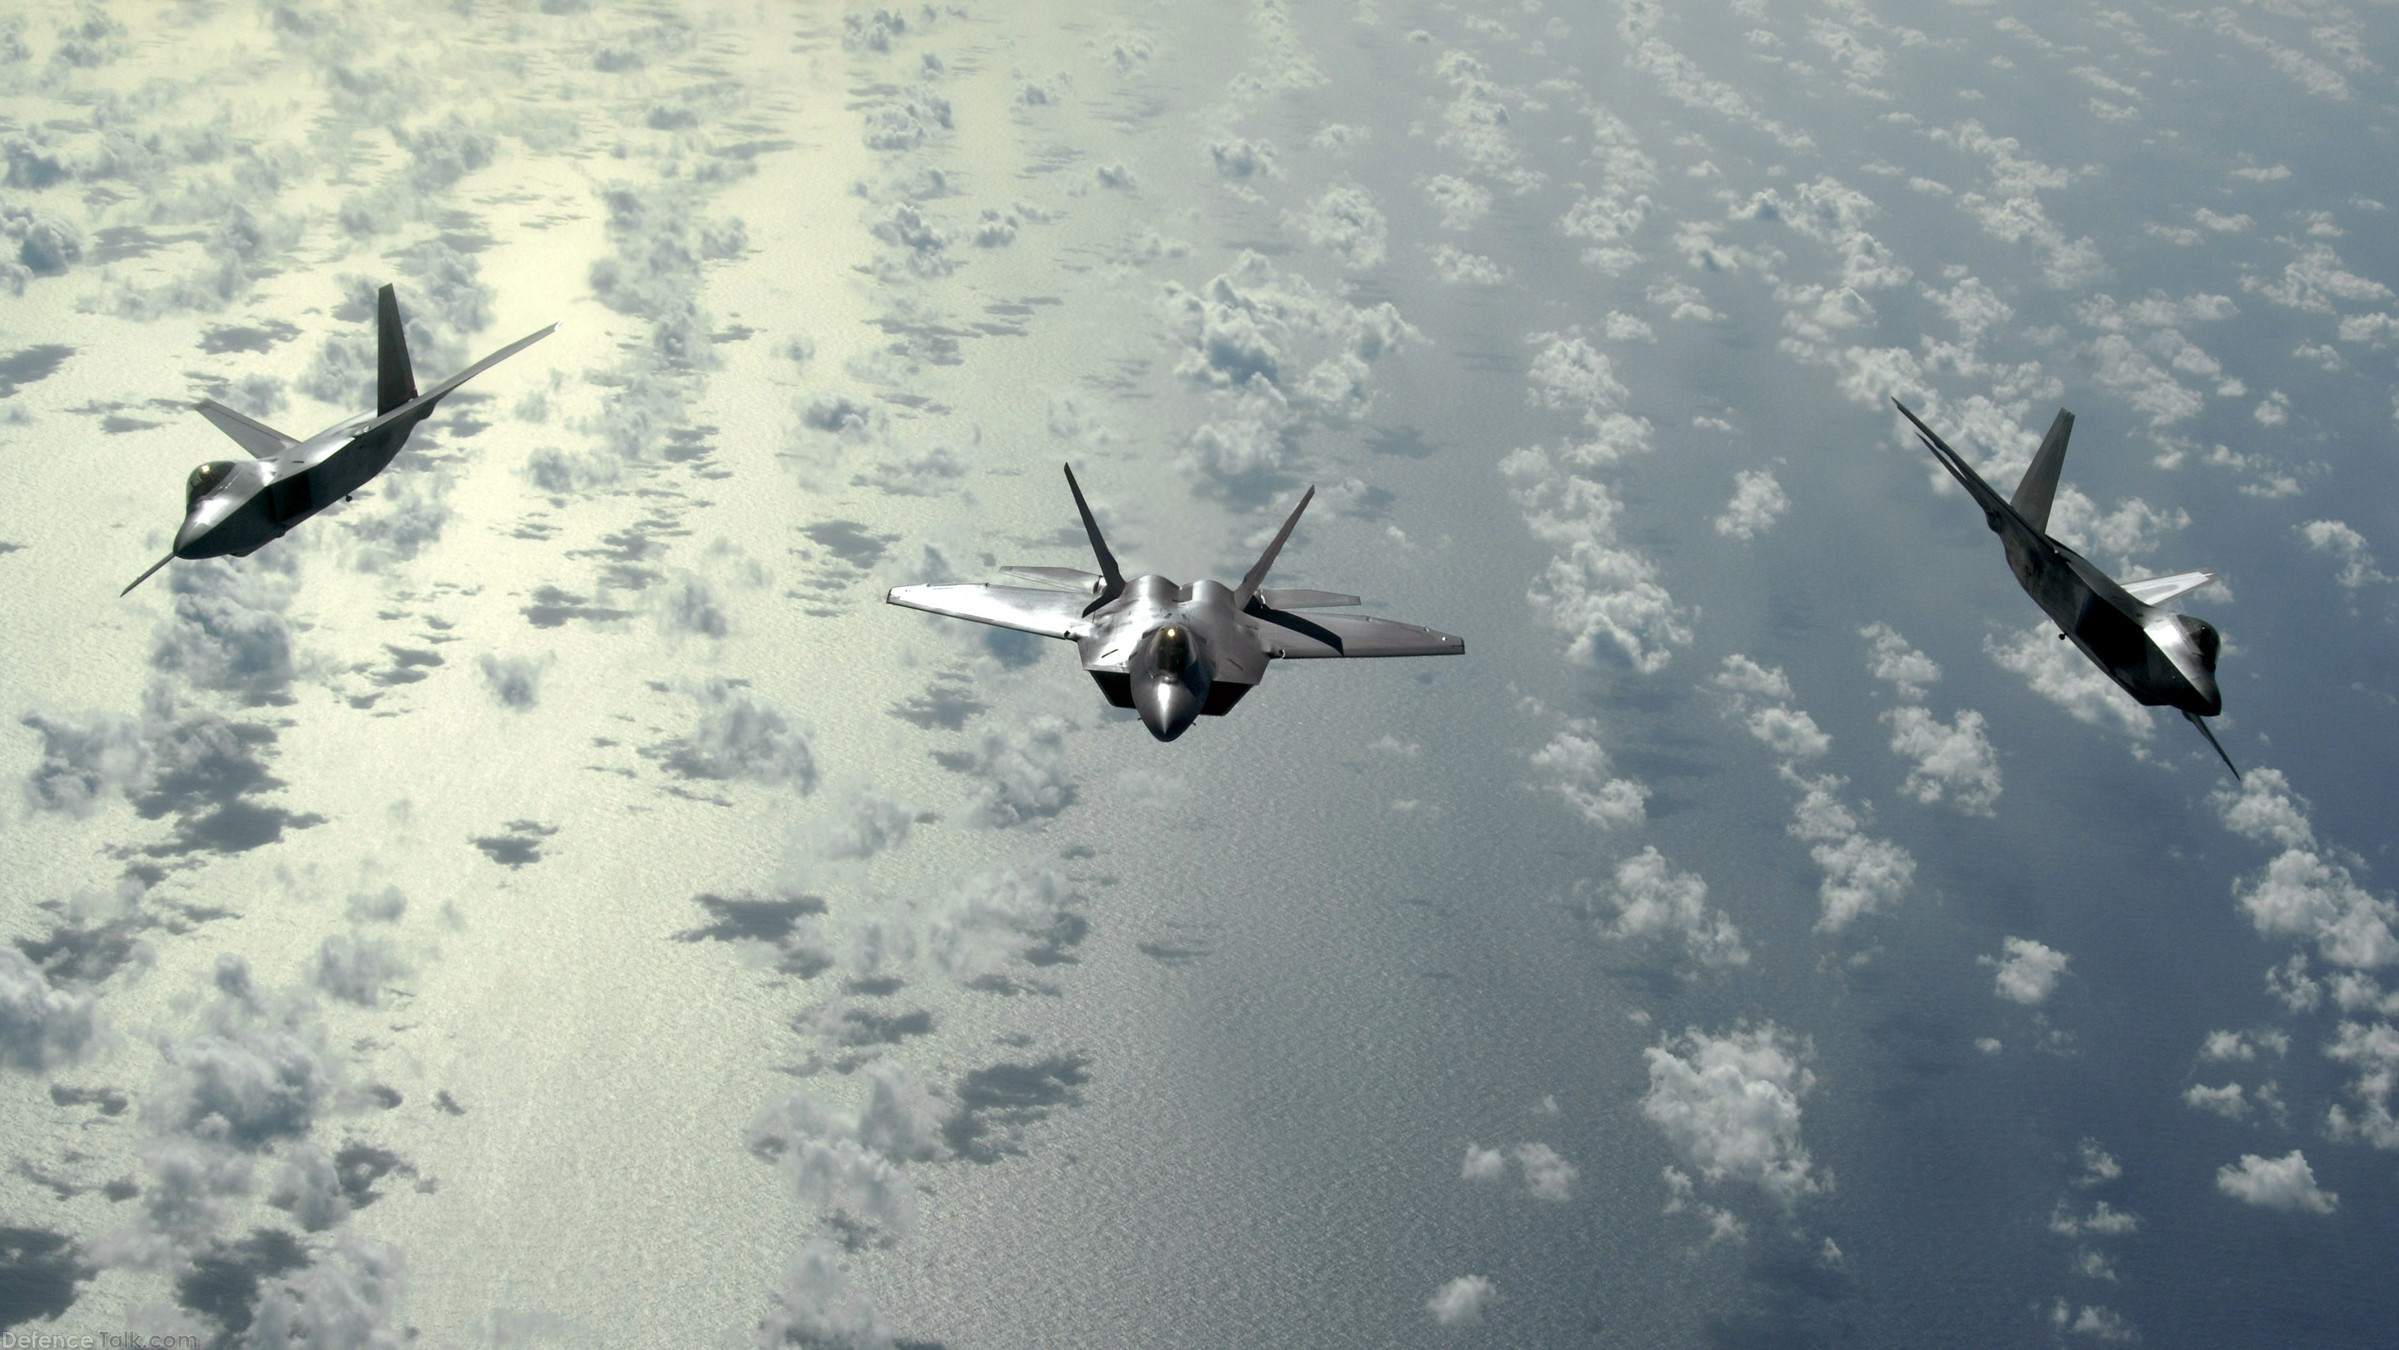 USAF F-22 Raptor Stealth Fighter